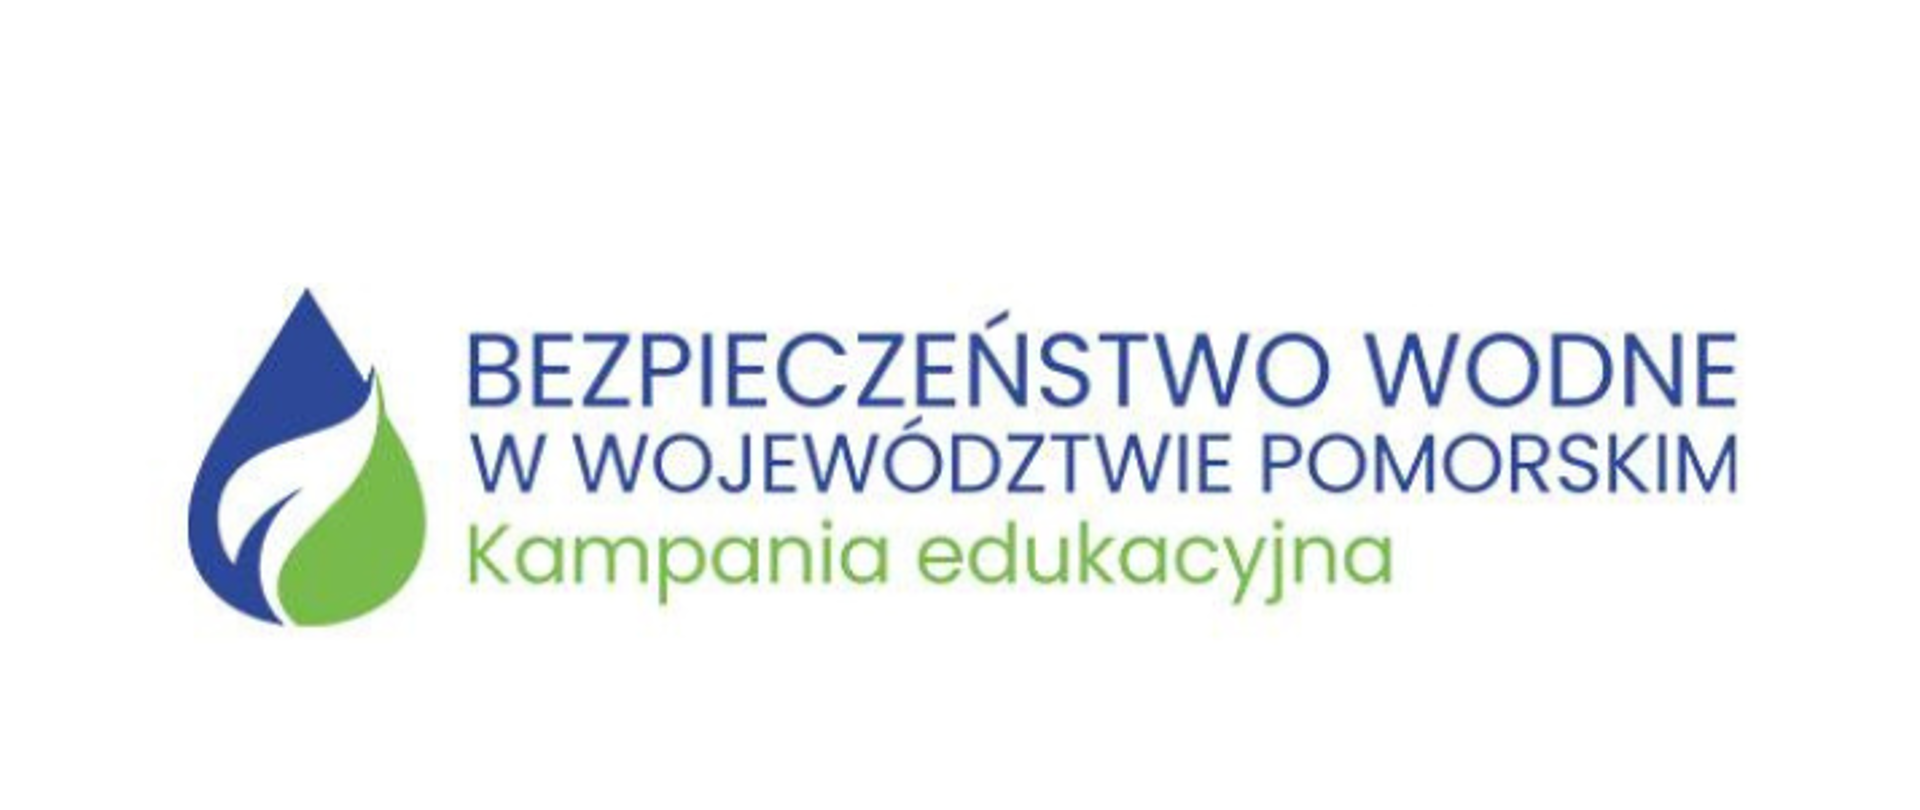 Konferencja Bezpieczeństwo wodne w województwie pomorskim 